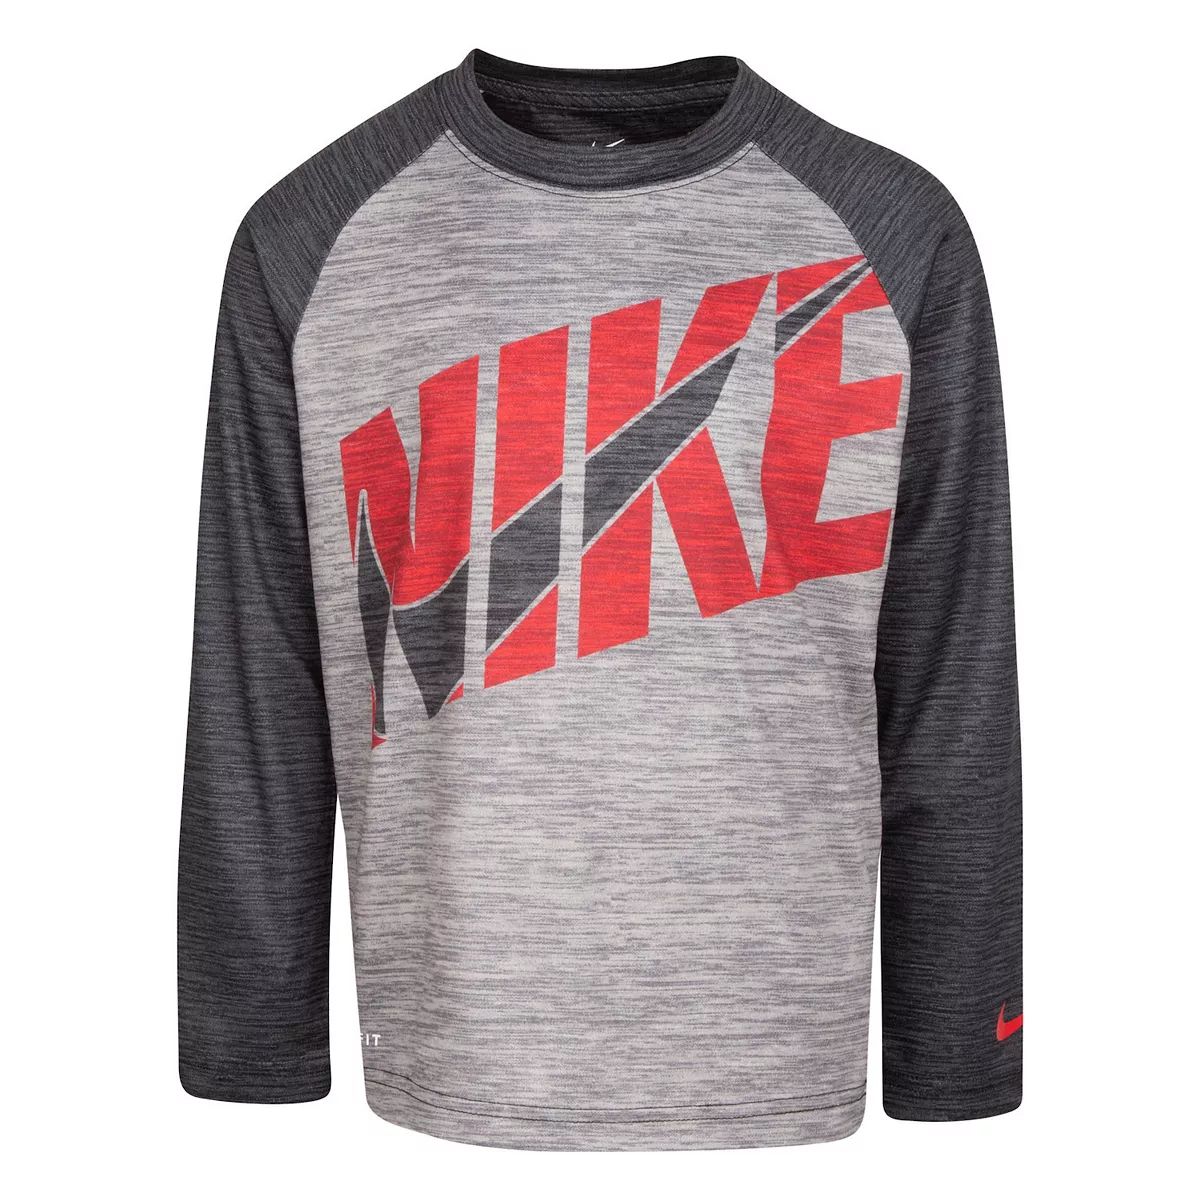 Boys 4-7 Nike Dri-FIT Long Sleeve T-Shirt | Kohl's